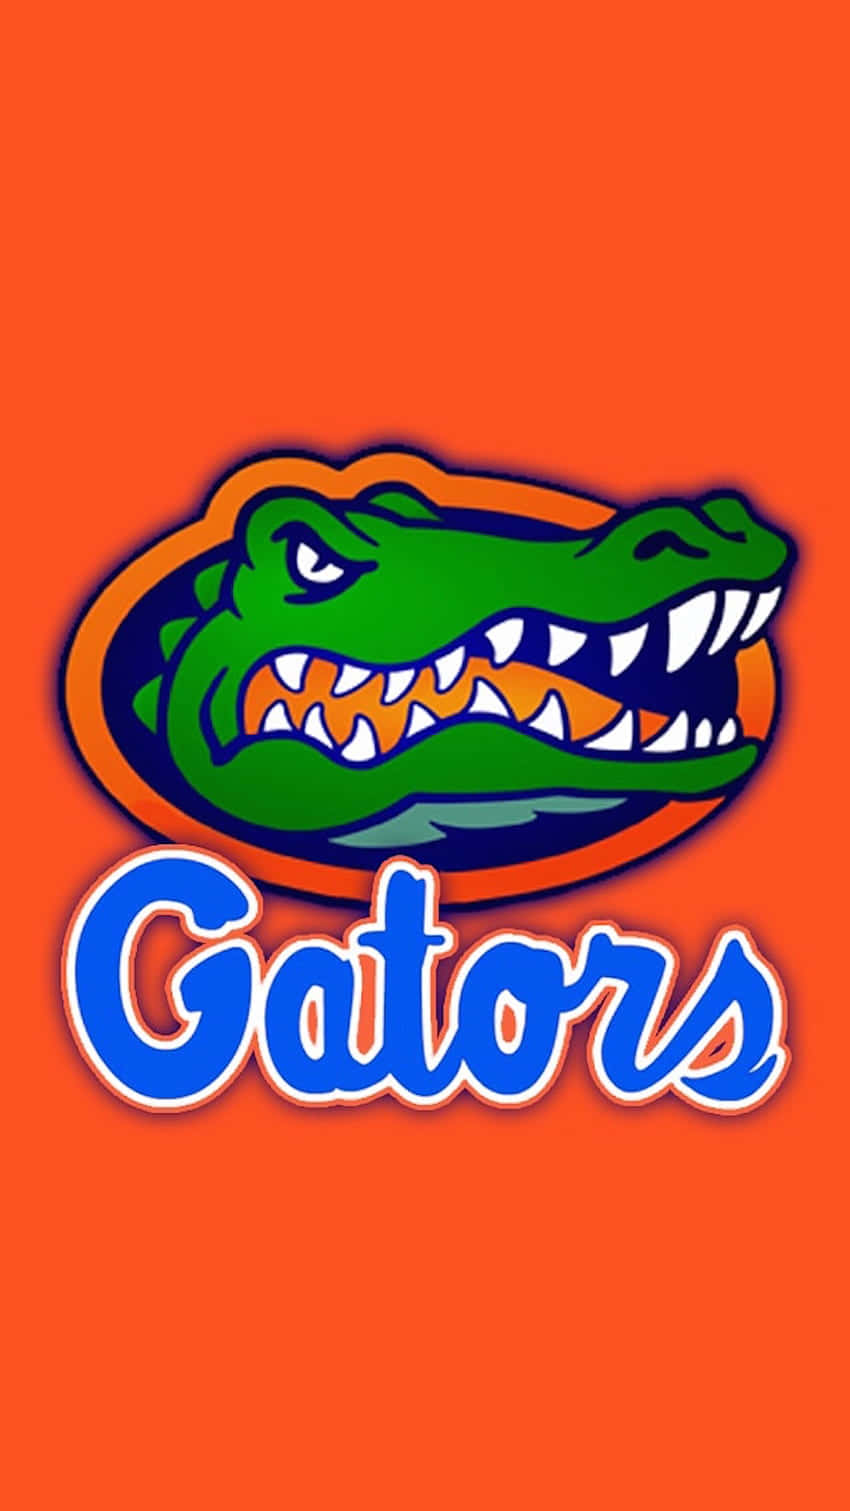 Florida Gators logo på et orange baggrund Wallpaper